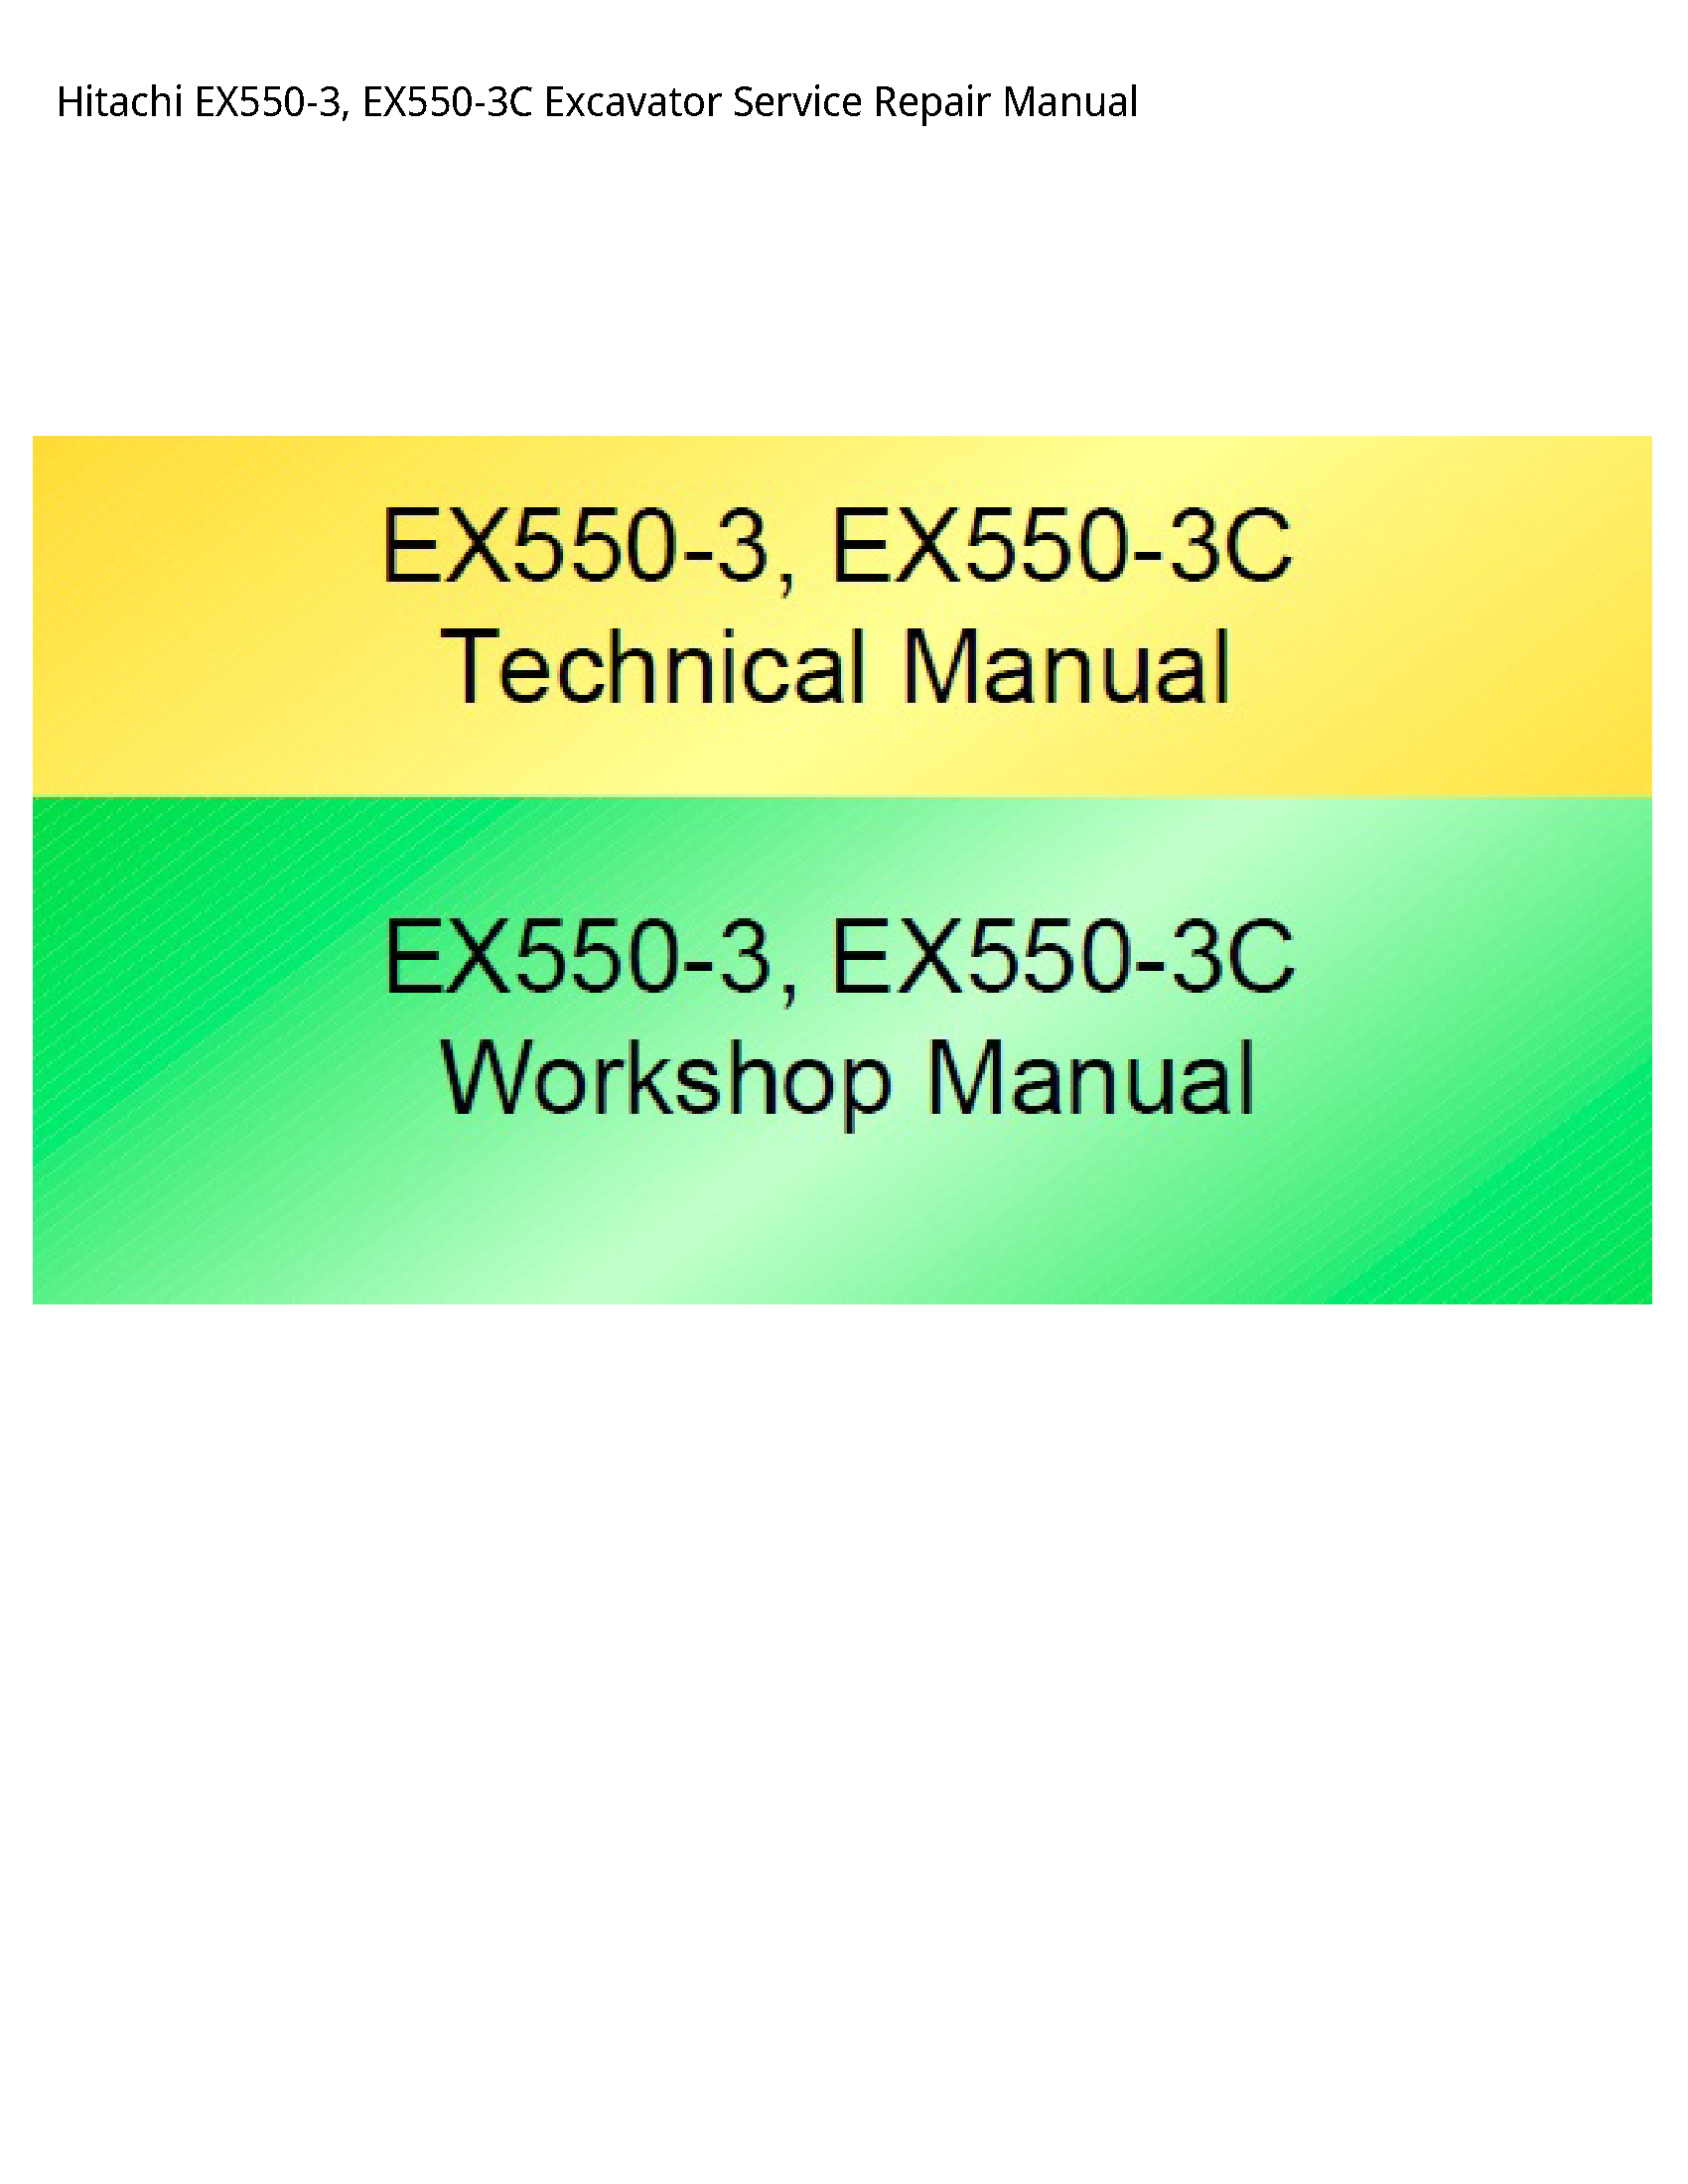 Hitachi EX550-3 Excavator manual